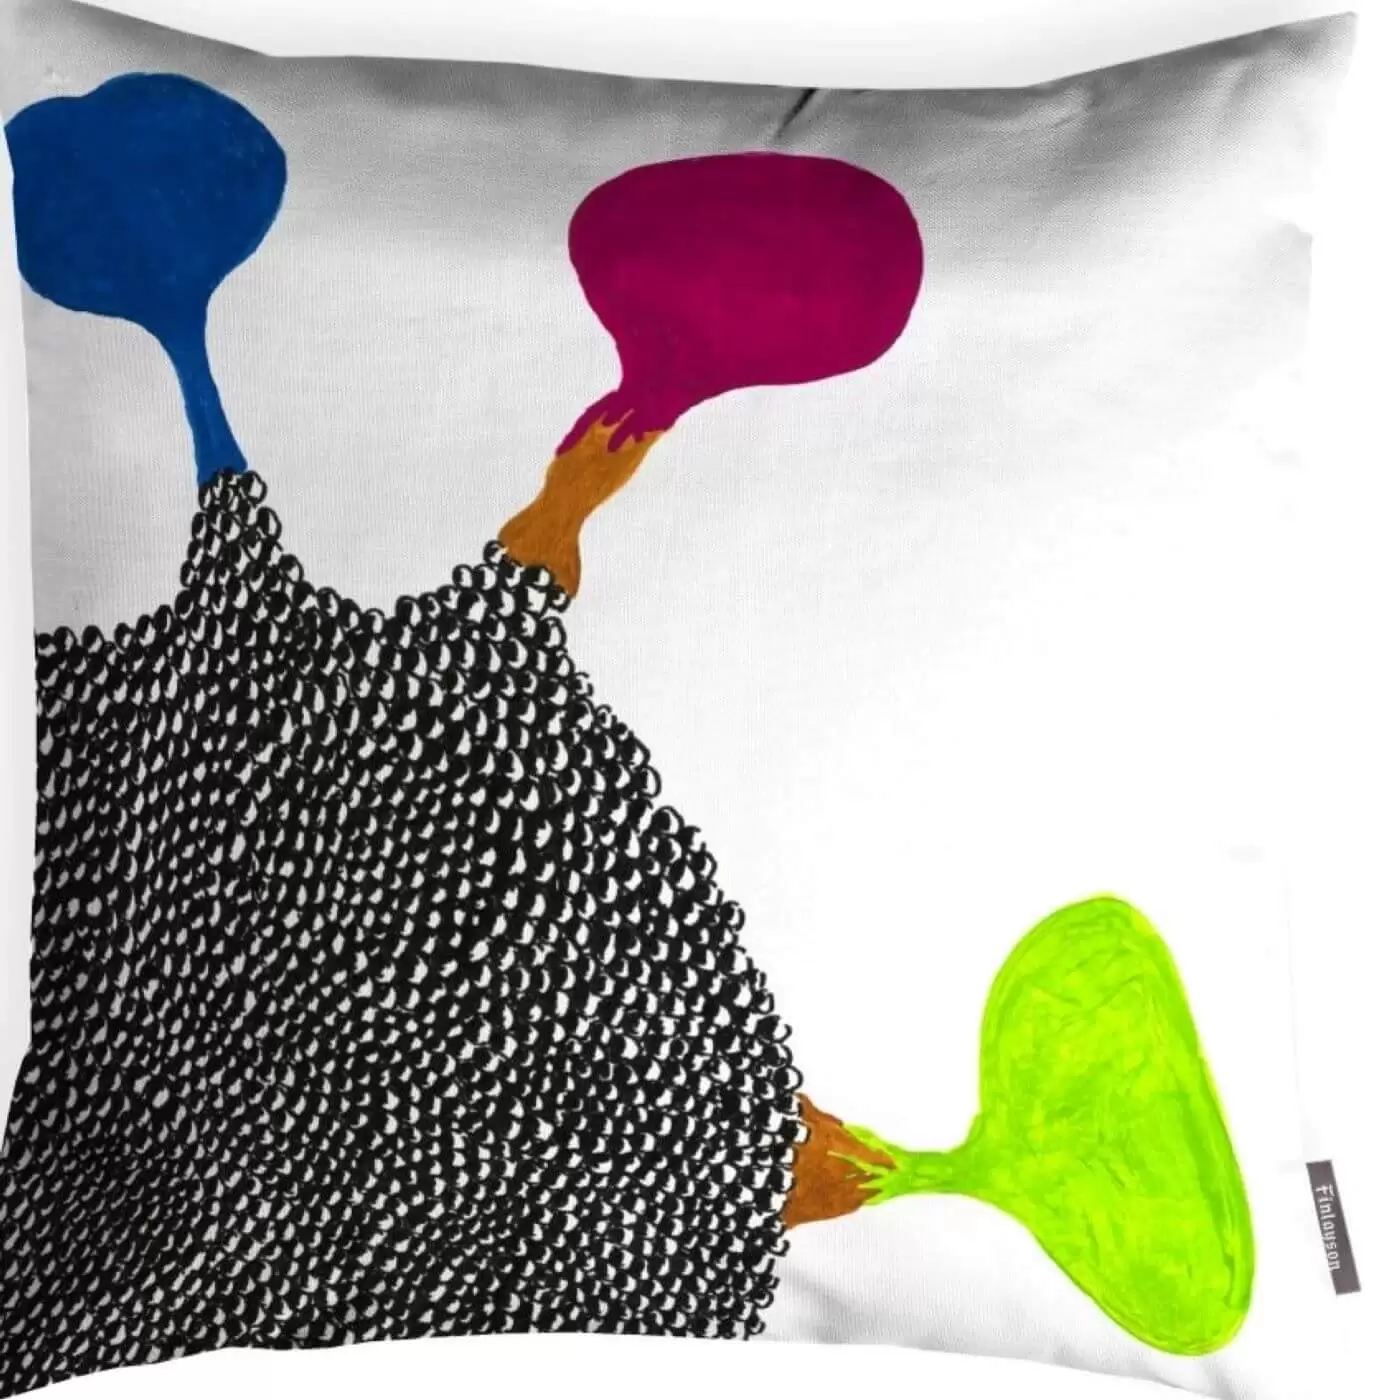 Poszewka dekoracyjna nowoczesna EMO. Widoczna w powiększeniu poszewka na poduszkę z grubej bawełny ze wzorem w kolorową futurystyczną plamę na białym tle. Skandynawskie wzornictwo